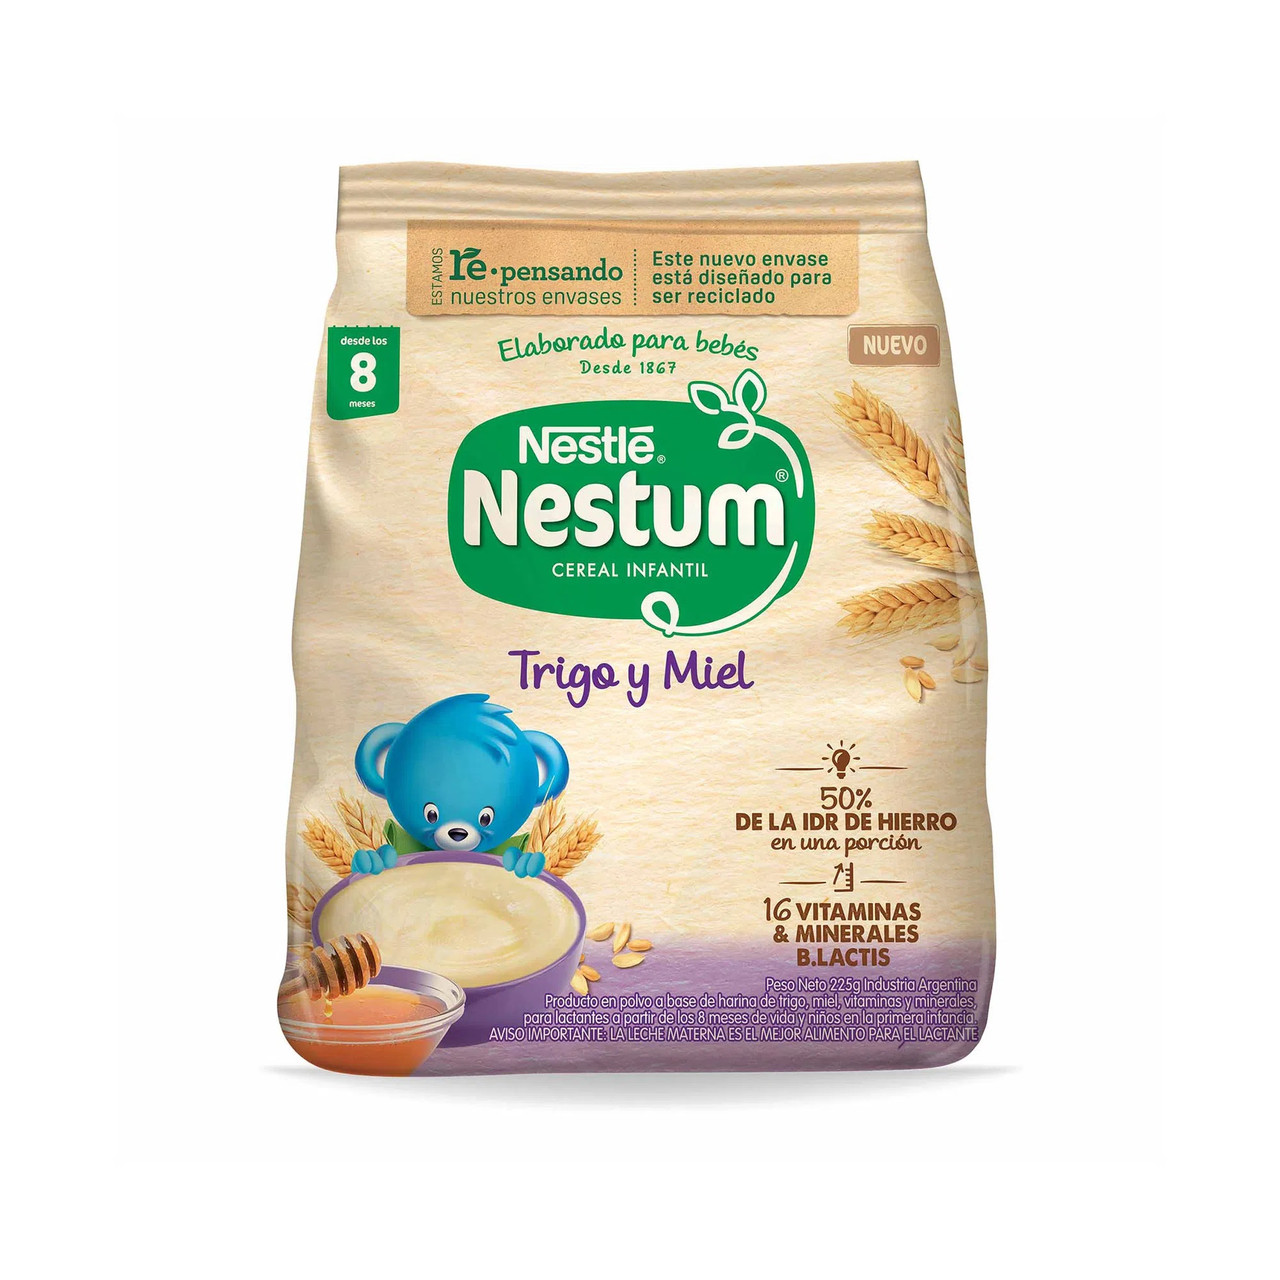 Nestle Nestum Honey Wheat Cereal